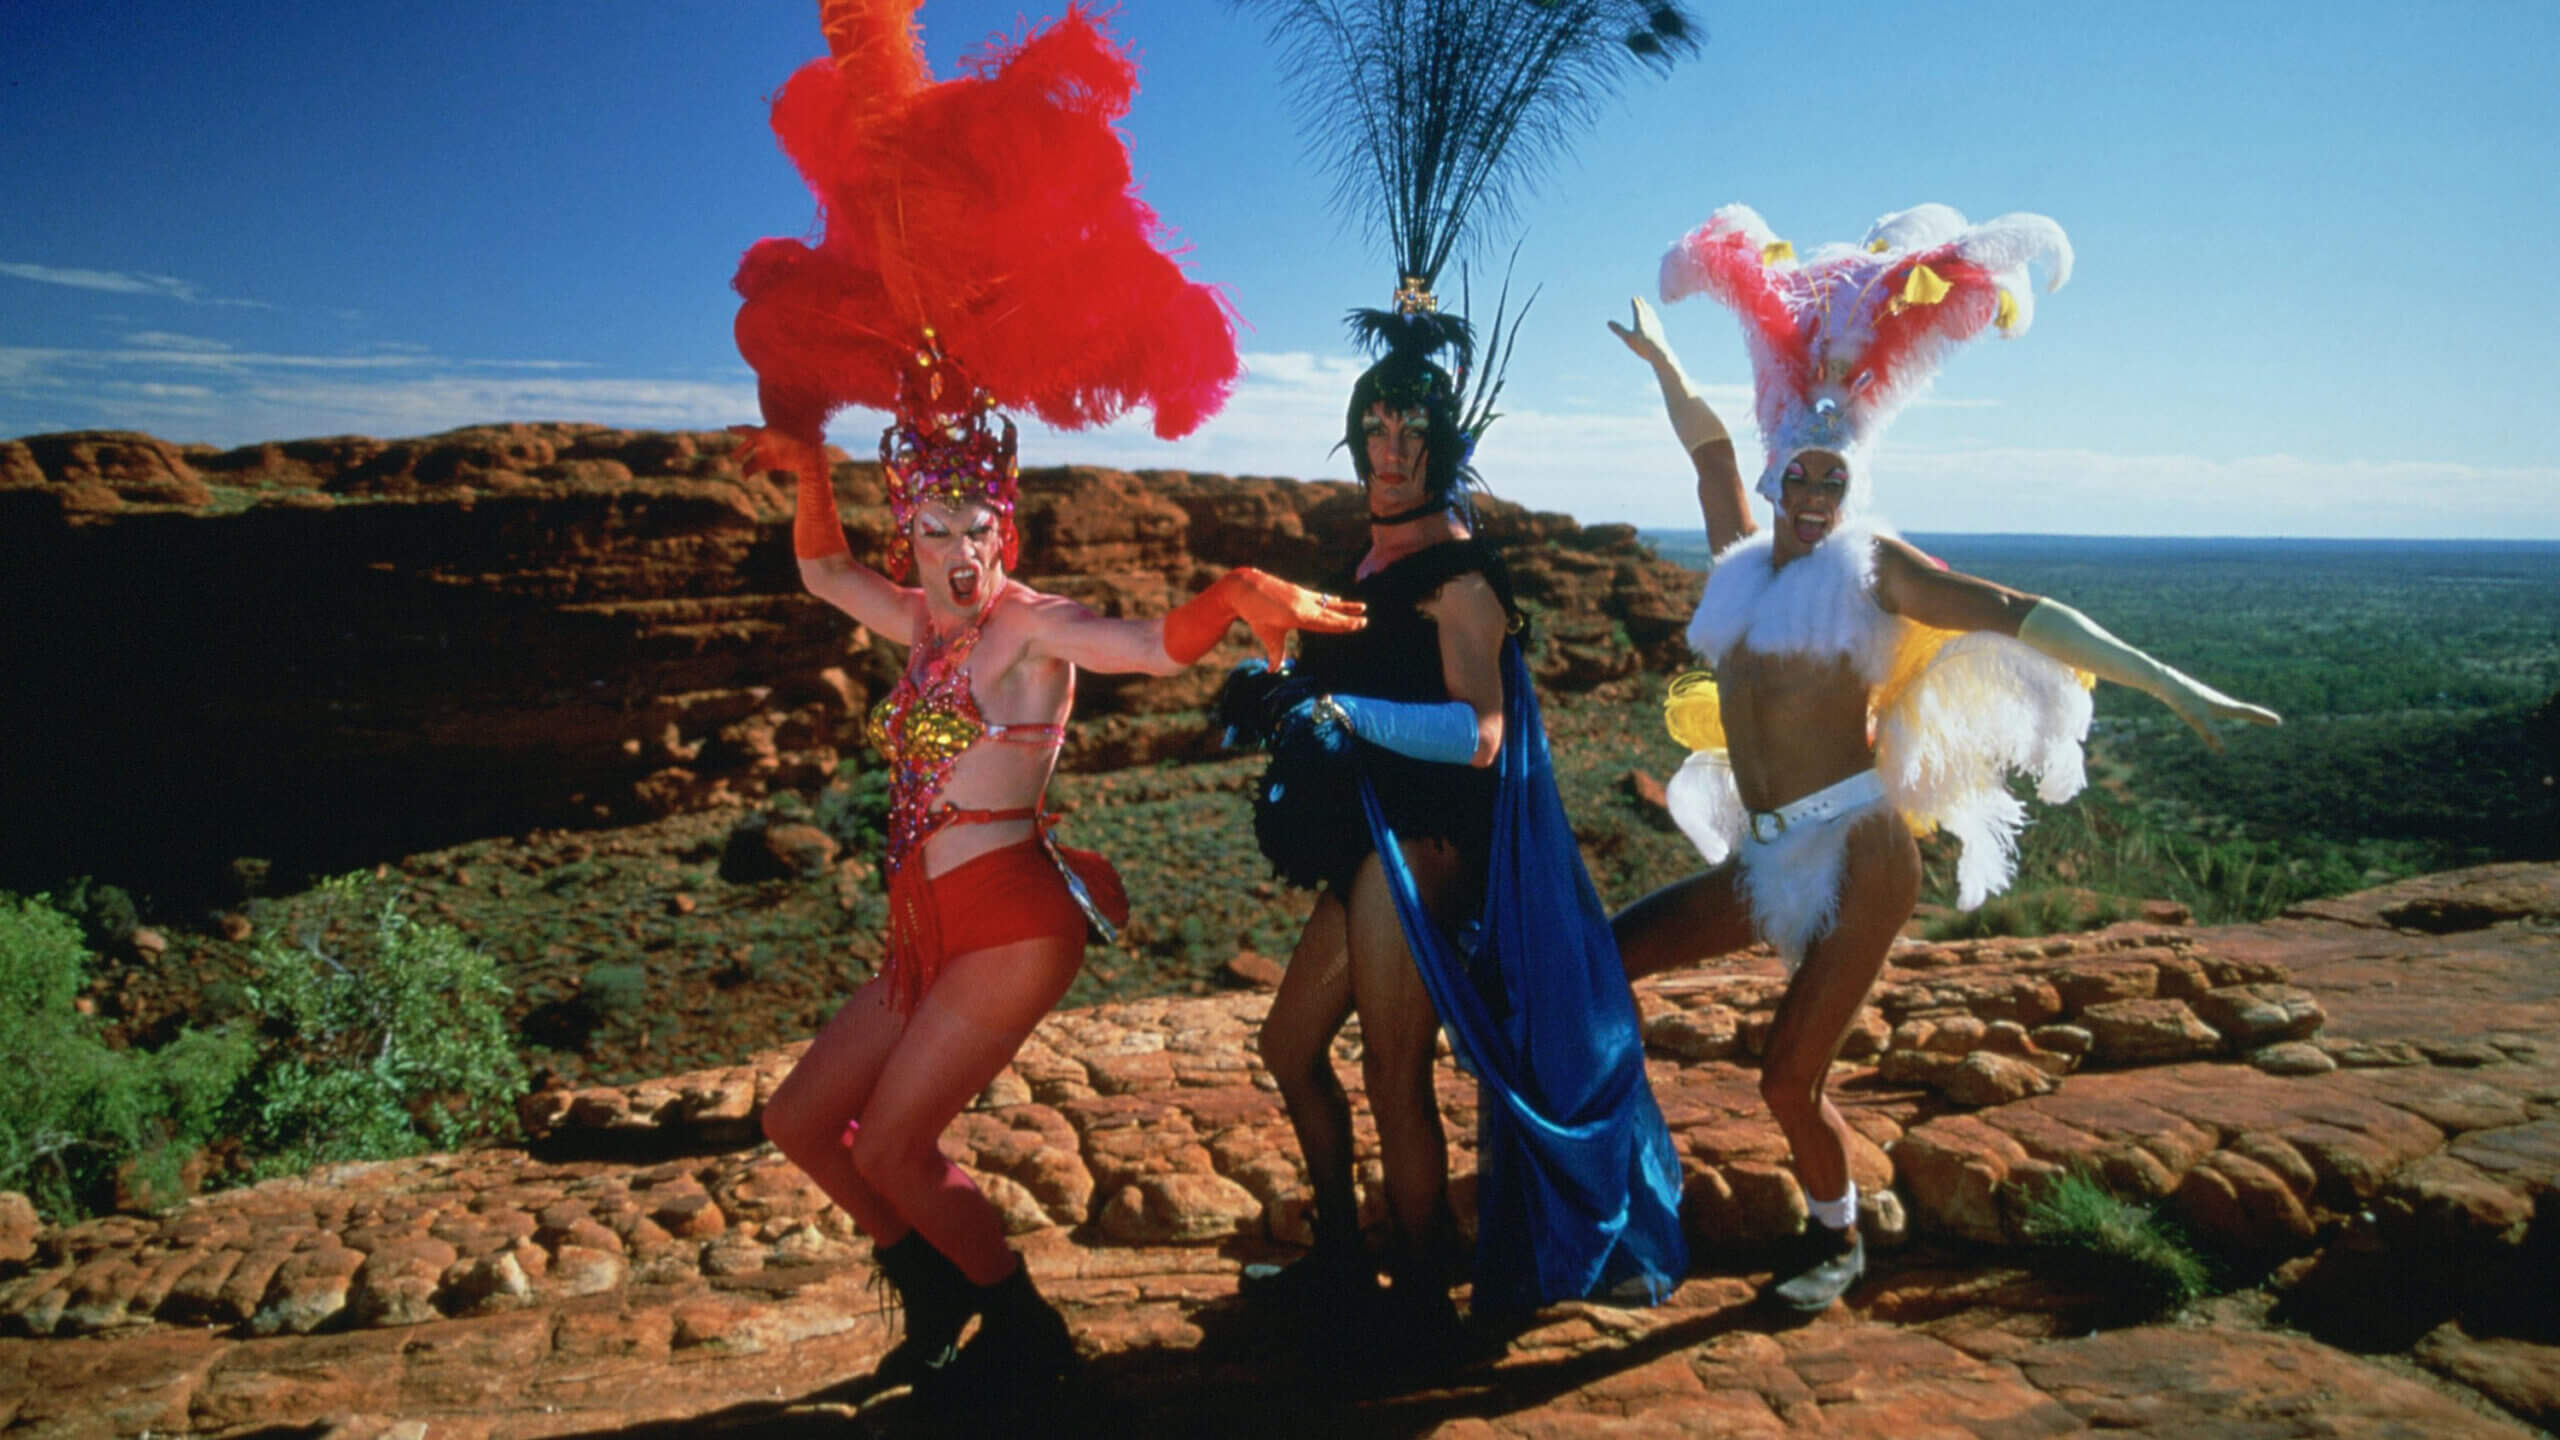 Hugo Weaving, Guy Pearce et Terence Stamp en drag dans une scène du film Priscilla, Queen of the Desert.